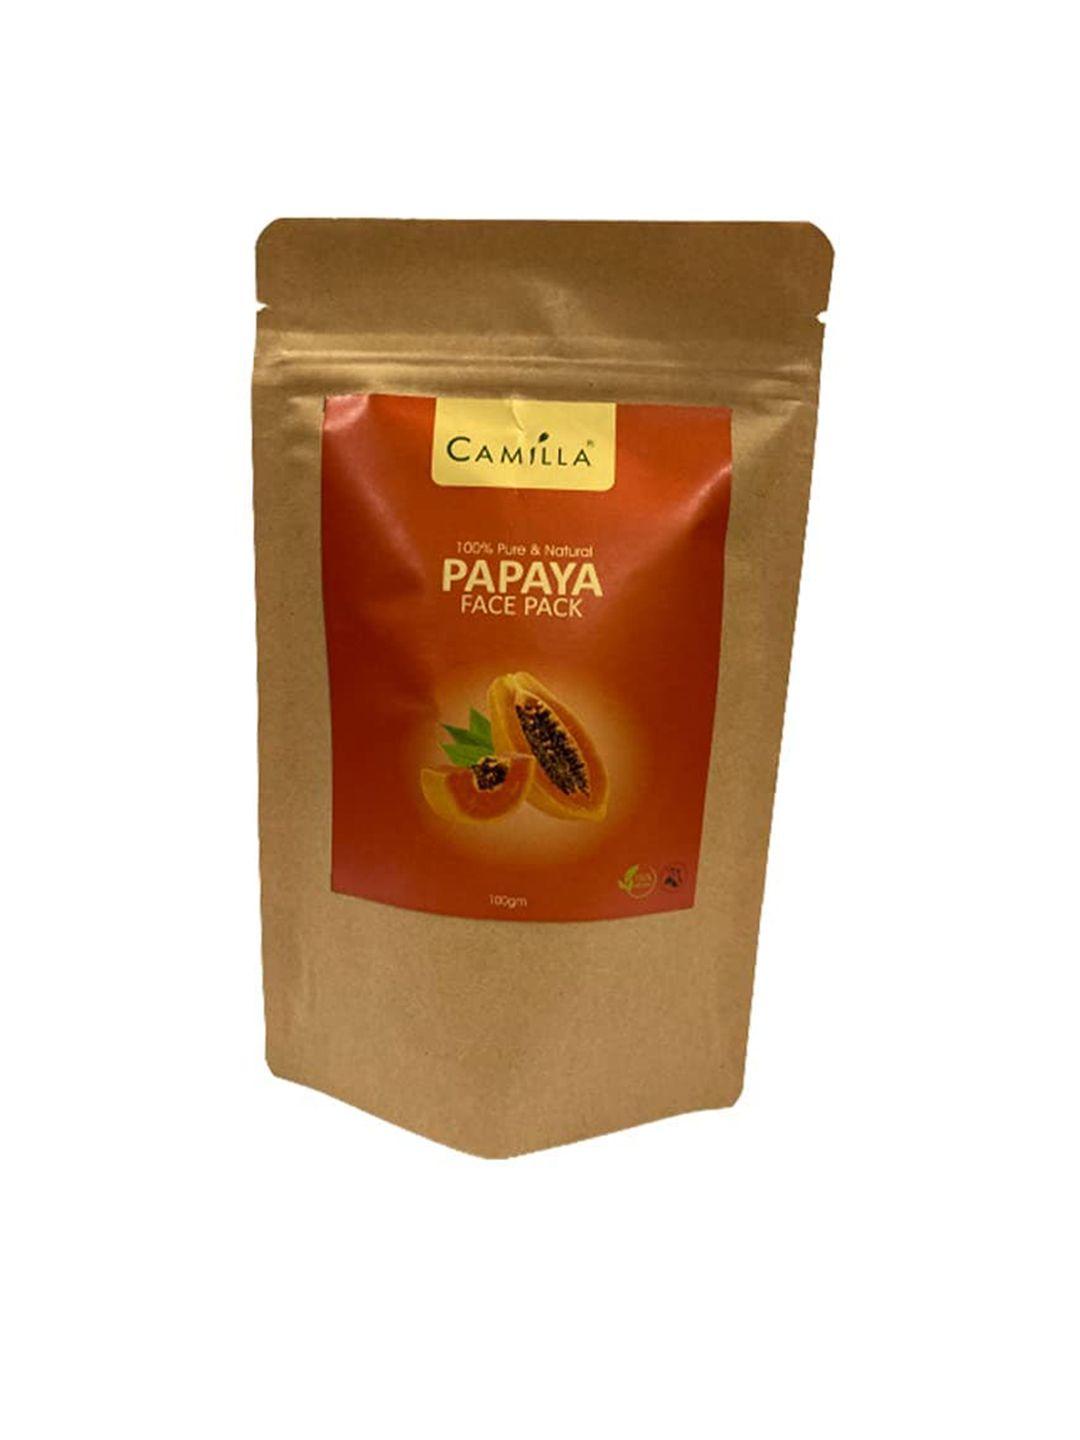 camilla 100% pure & natural papaya face pack - 100 g